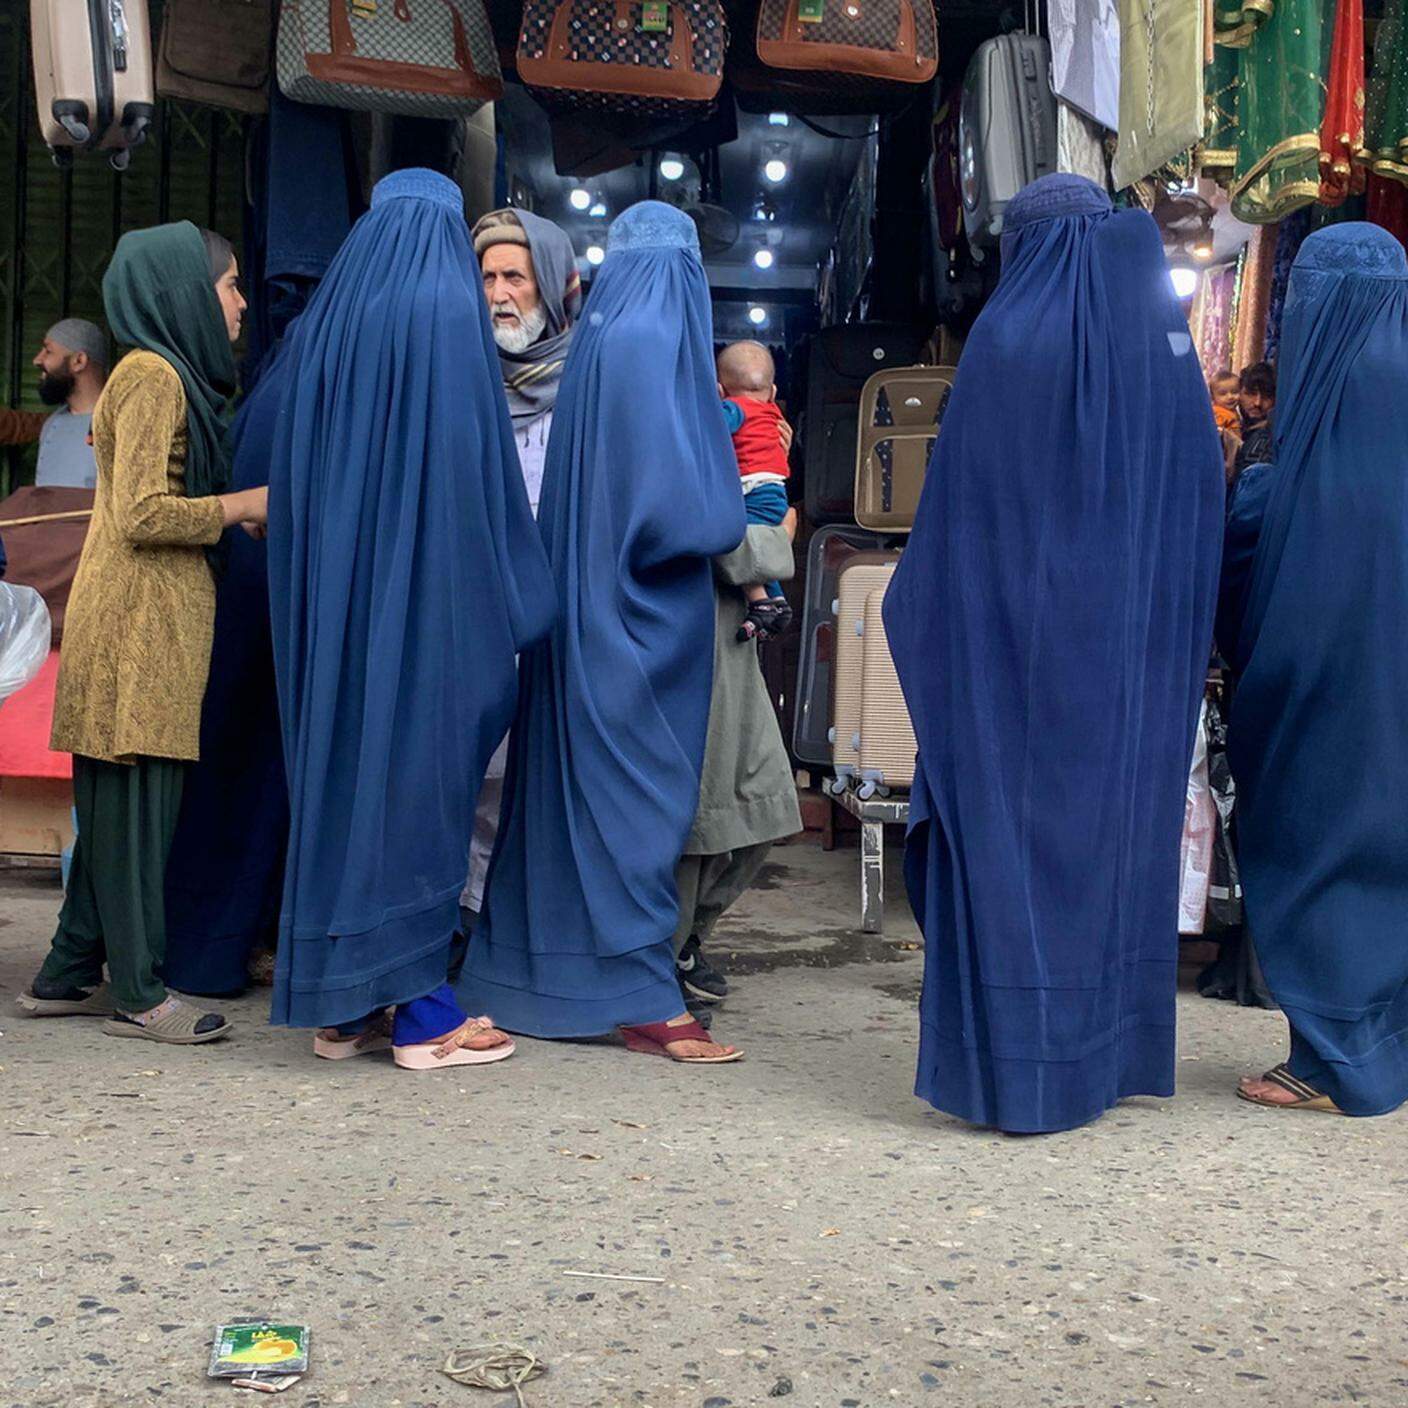 Secondo un decreto emesso dal comandante supremo dei talebani Haibatullah Akhunzada il 7 maggio, le donne afghane devono indossare un burqa che copre tutto mentre sono in pubblico, avvertendo i tutori maschi delle donne che saranno ritenute responsabili dalla legge se le donne non seguono il nuove restrizioni 